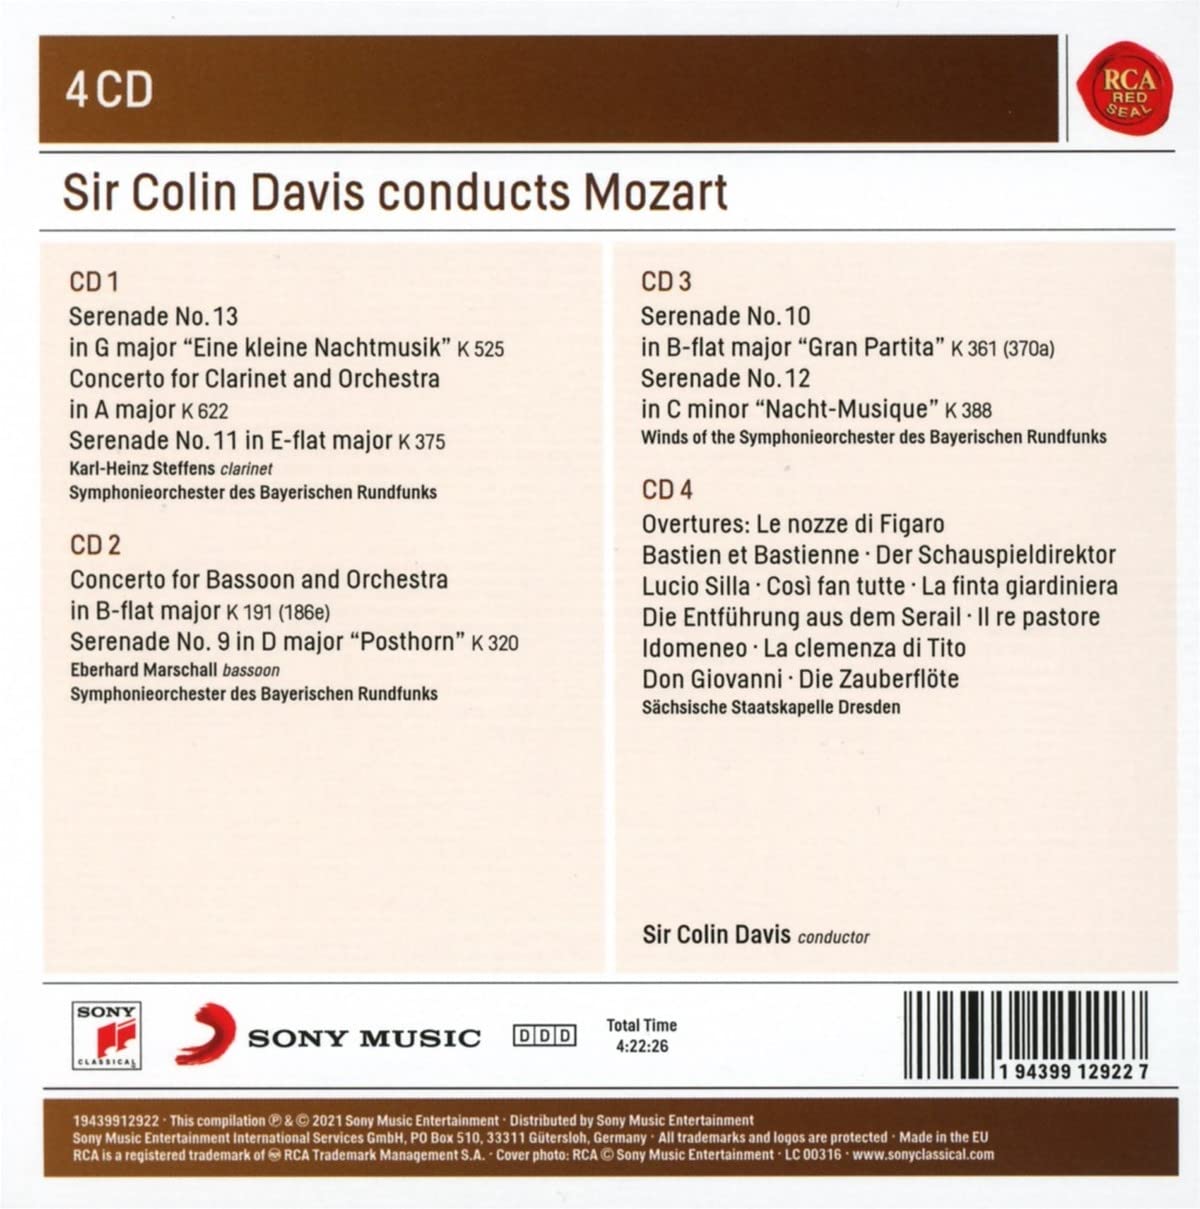 콜린 데이비스가 지휘하는 모차르트 세레나데와 서곡집 (Sir Colin Davis - Conducts Mozart) 